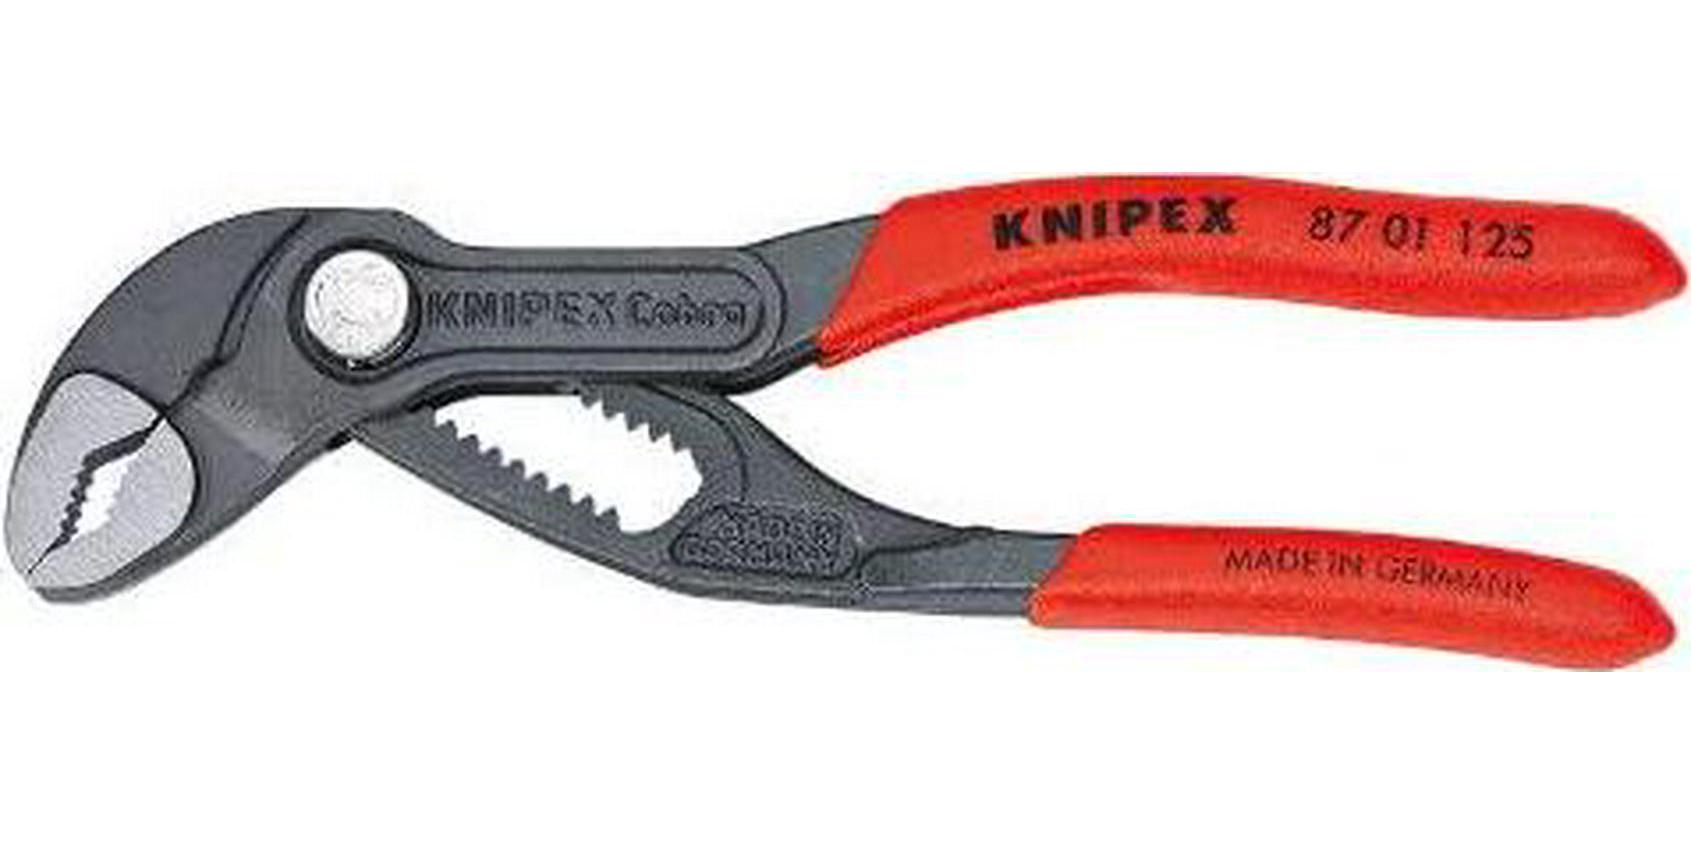 KNIPEX Tools, KNIPEX 87 01 125 Cobra Pliers